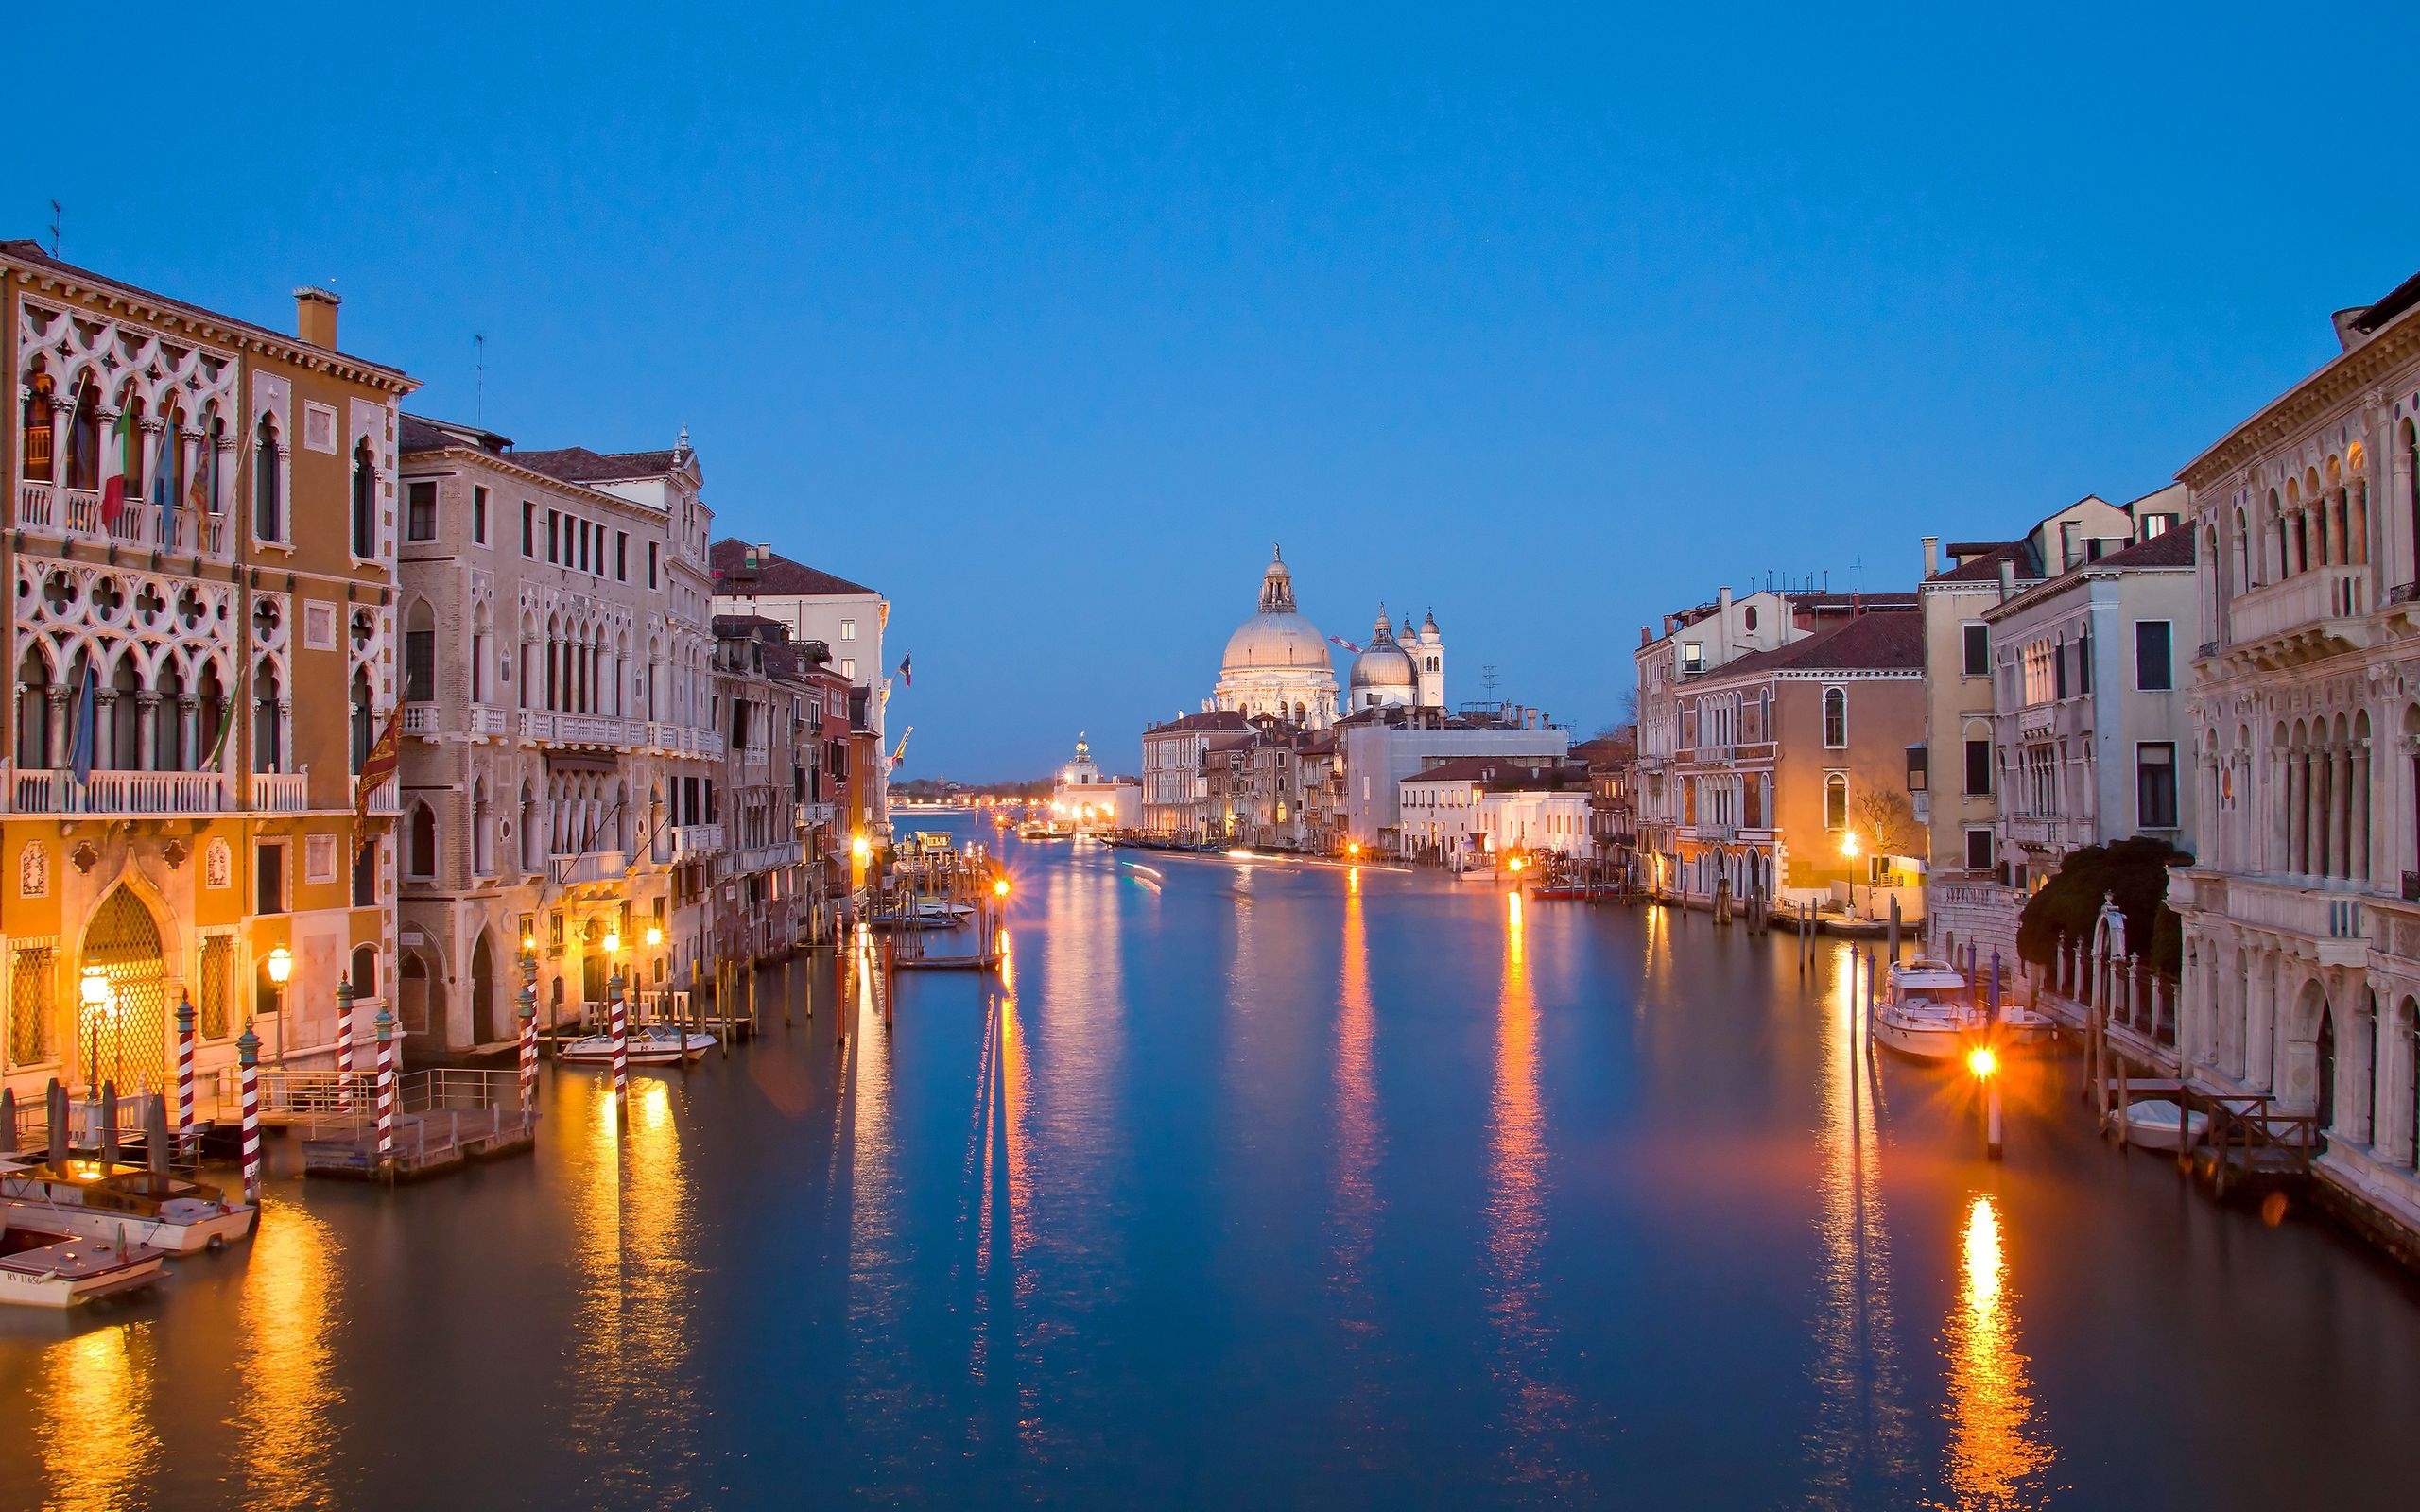 Популярные заставки и фоны Венеция на компьютер